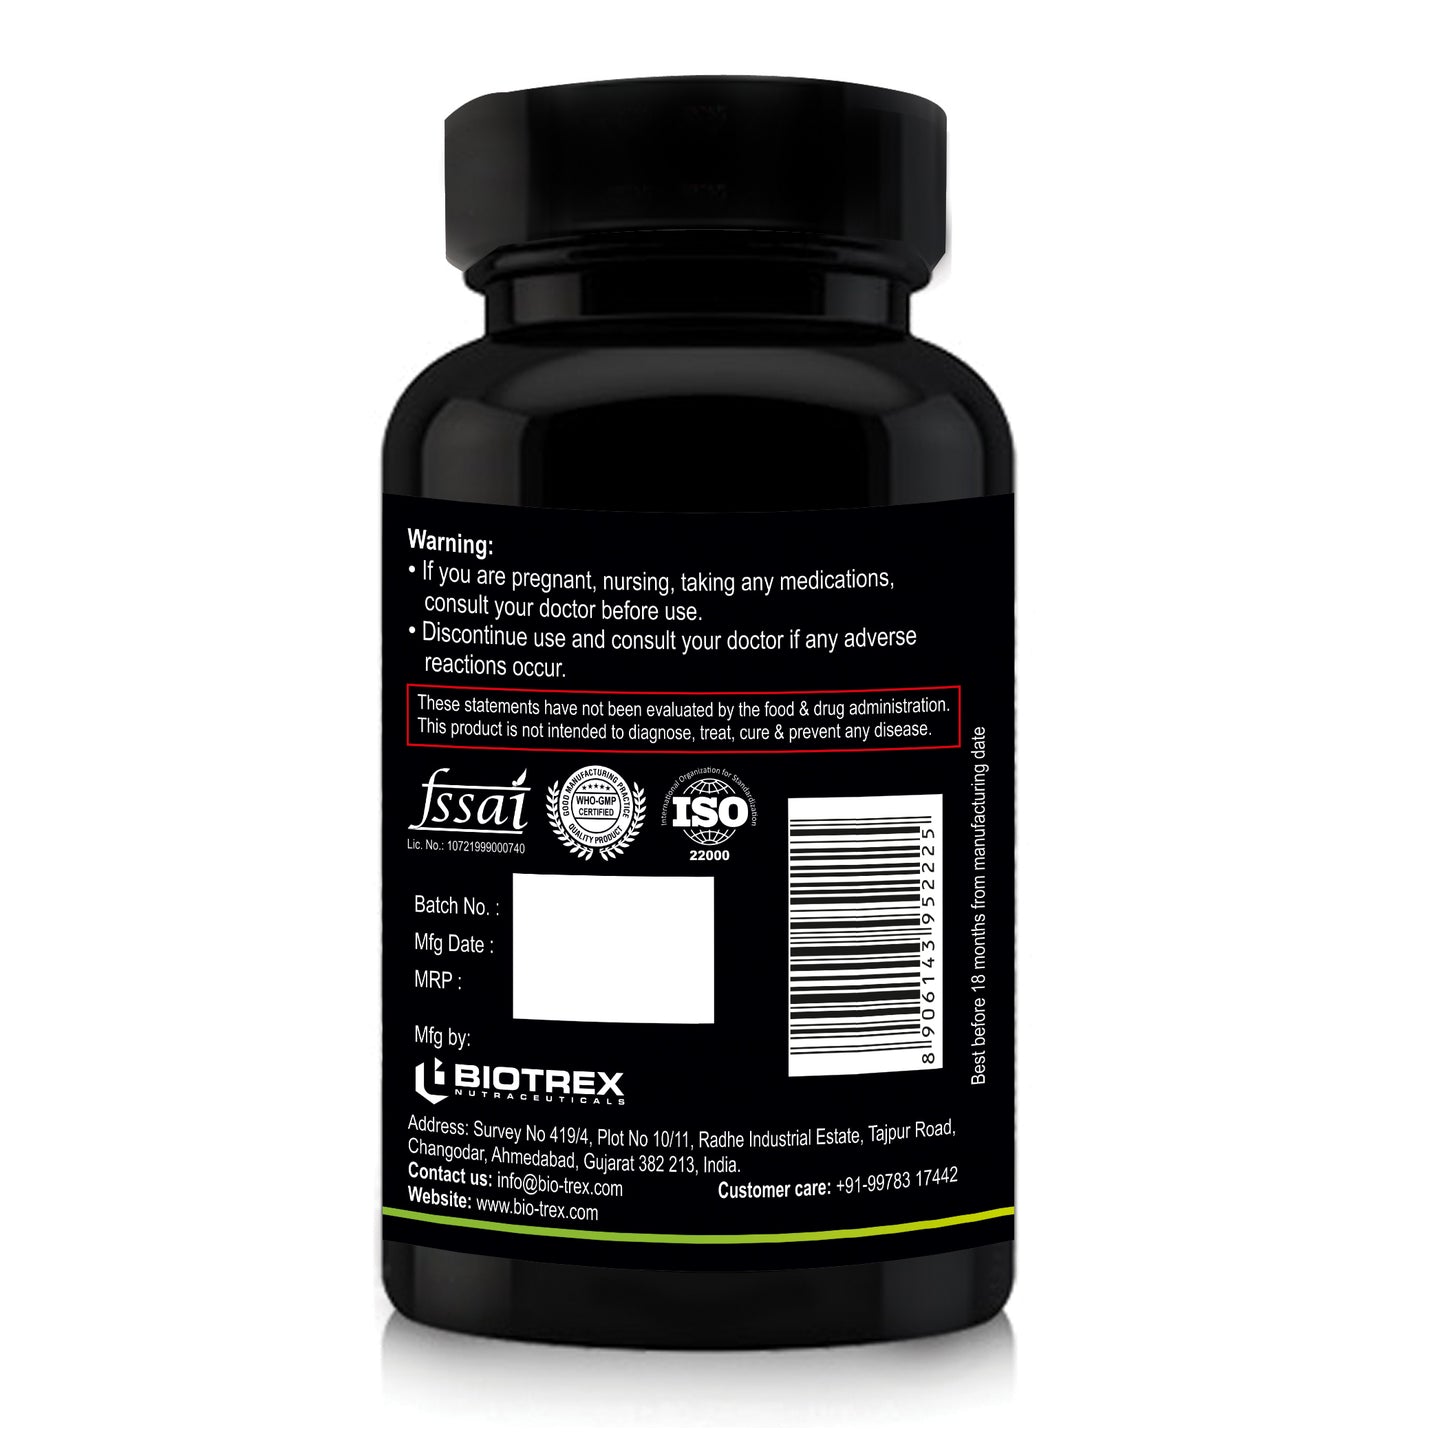 Nutriosys L-Methionine 500mg - 90 Capsules